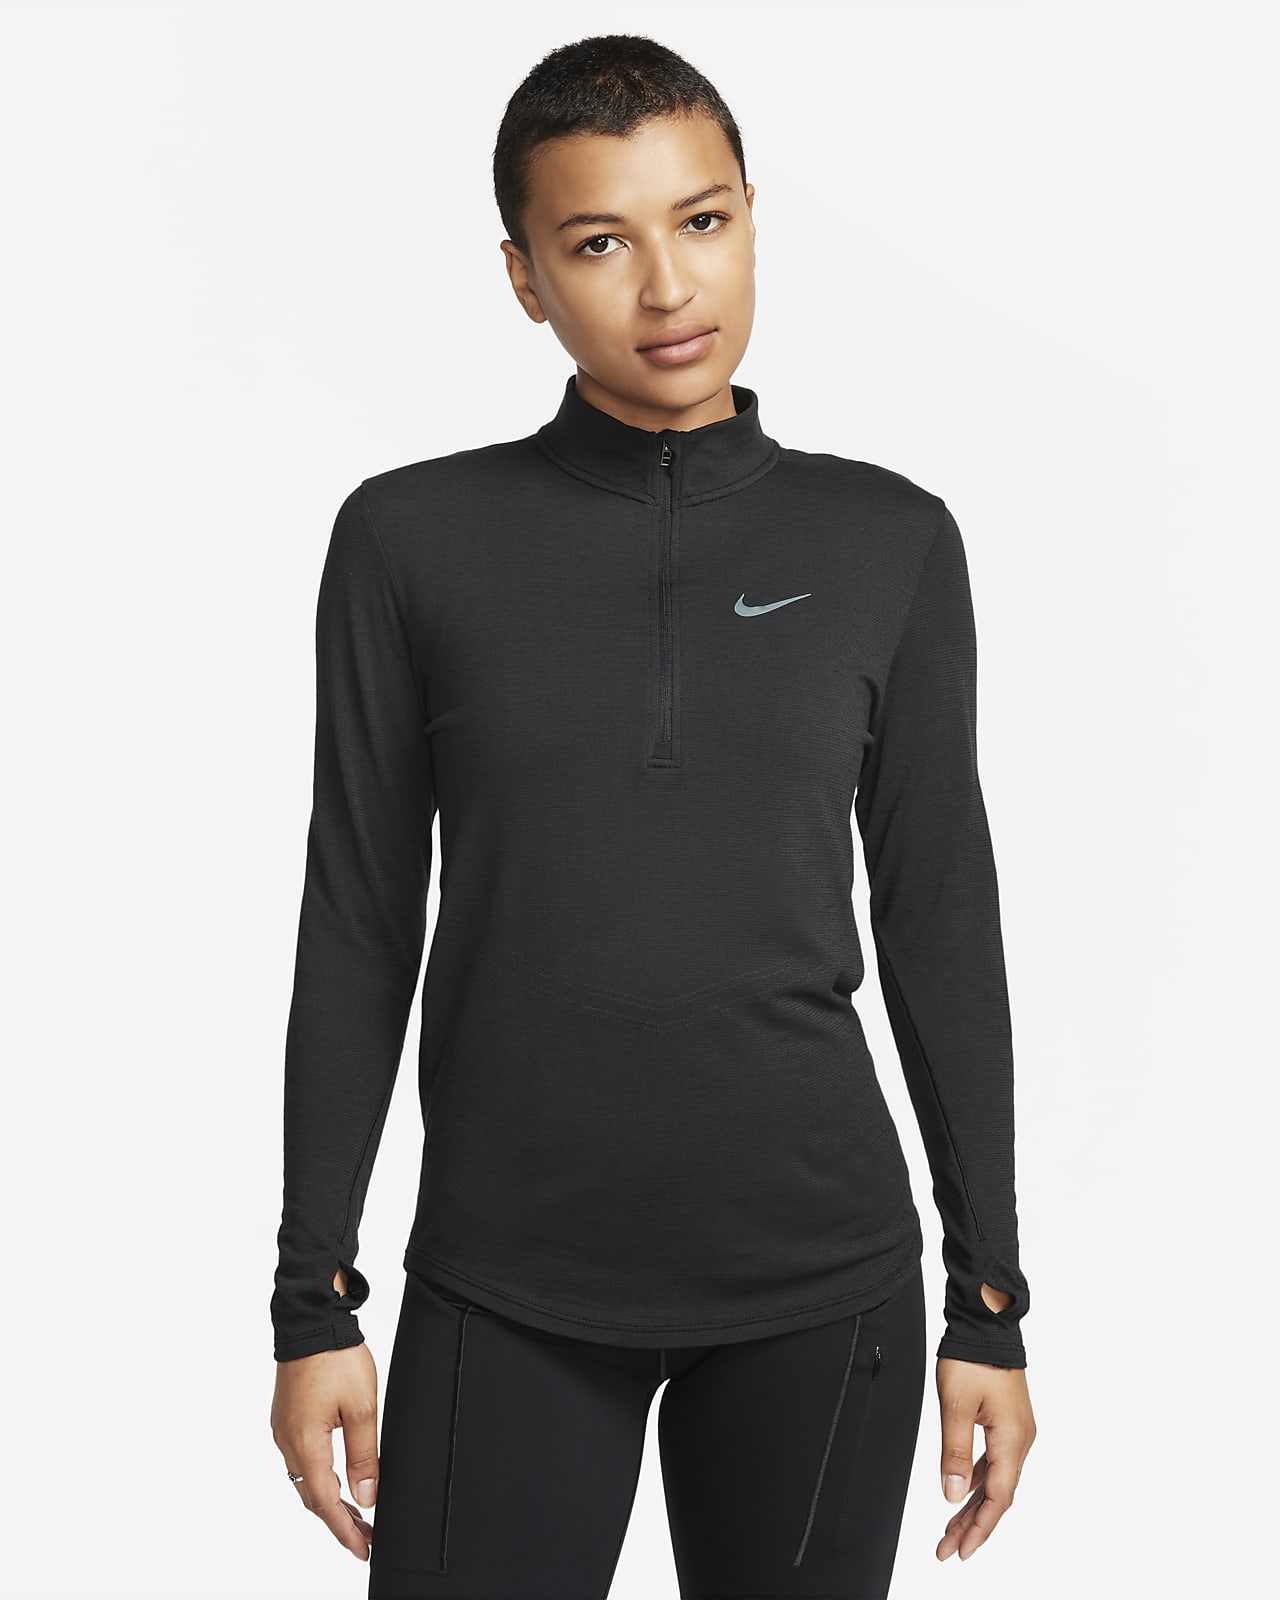 Γυναικεία μακρυμάνικη μάλλινη μπλούζα για τρέξιμο Nike Dri-FIT Swift